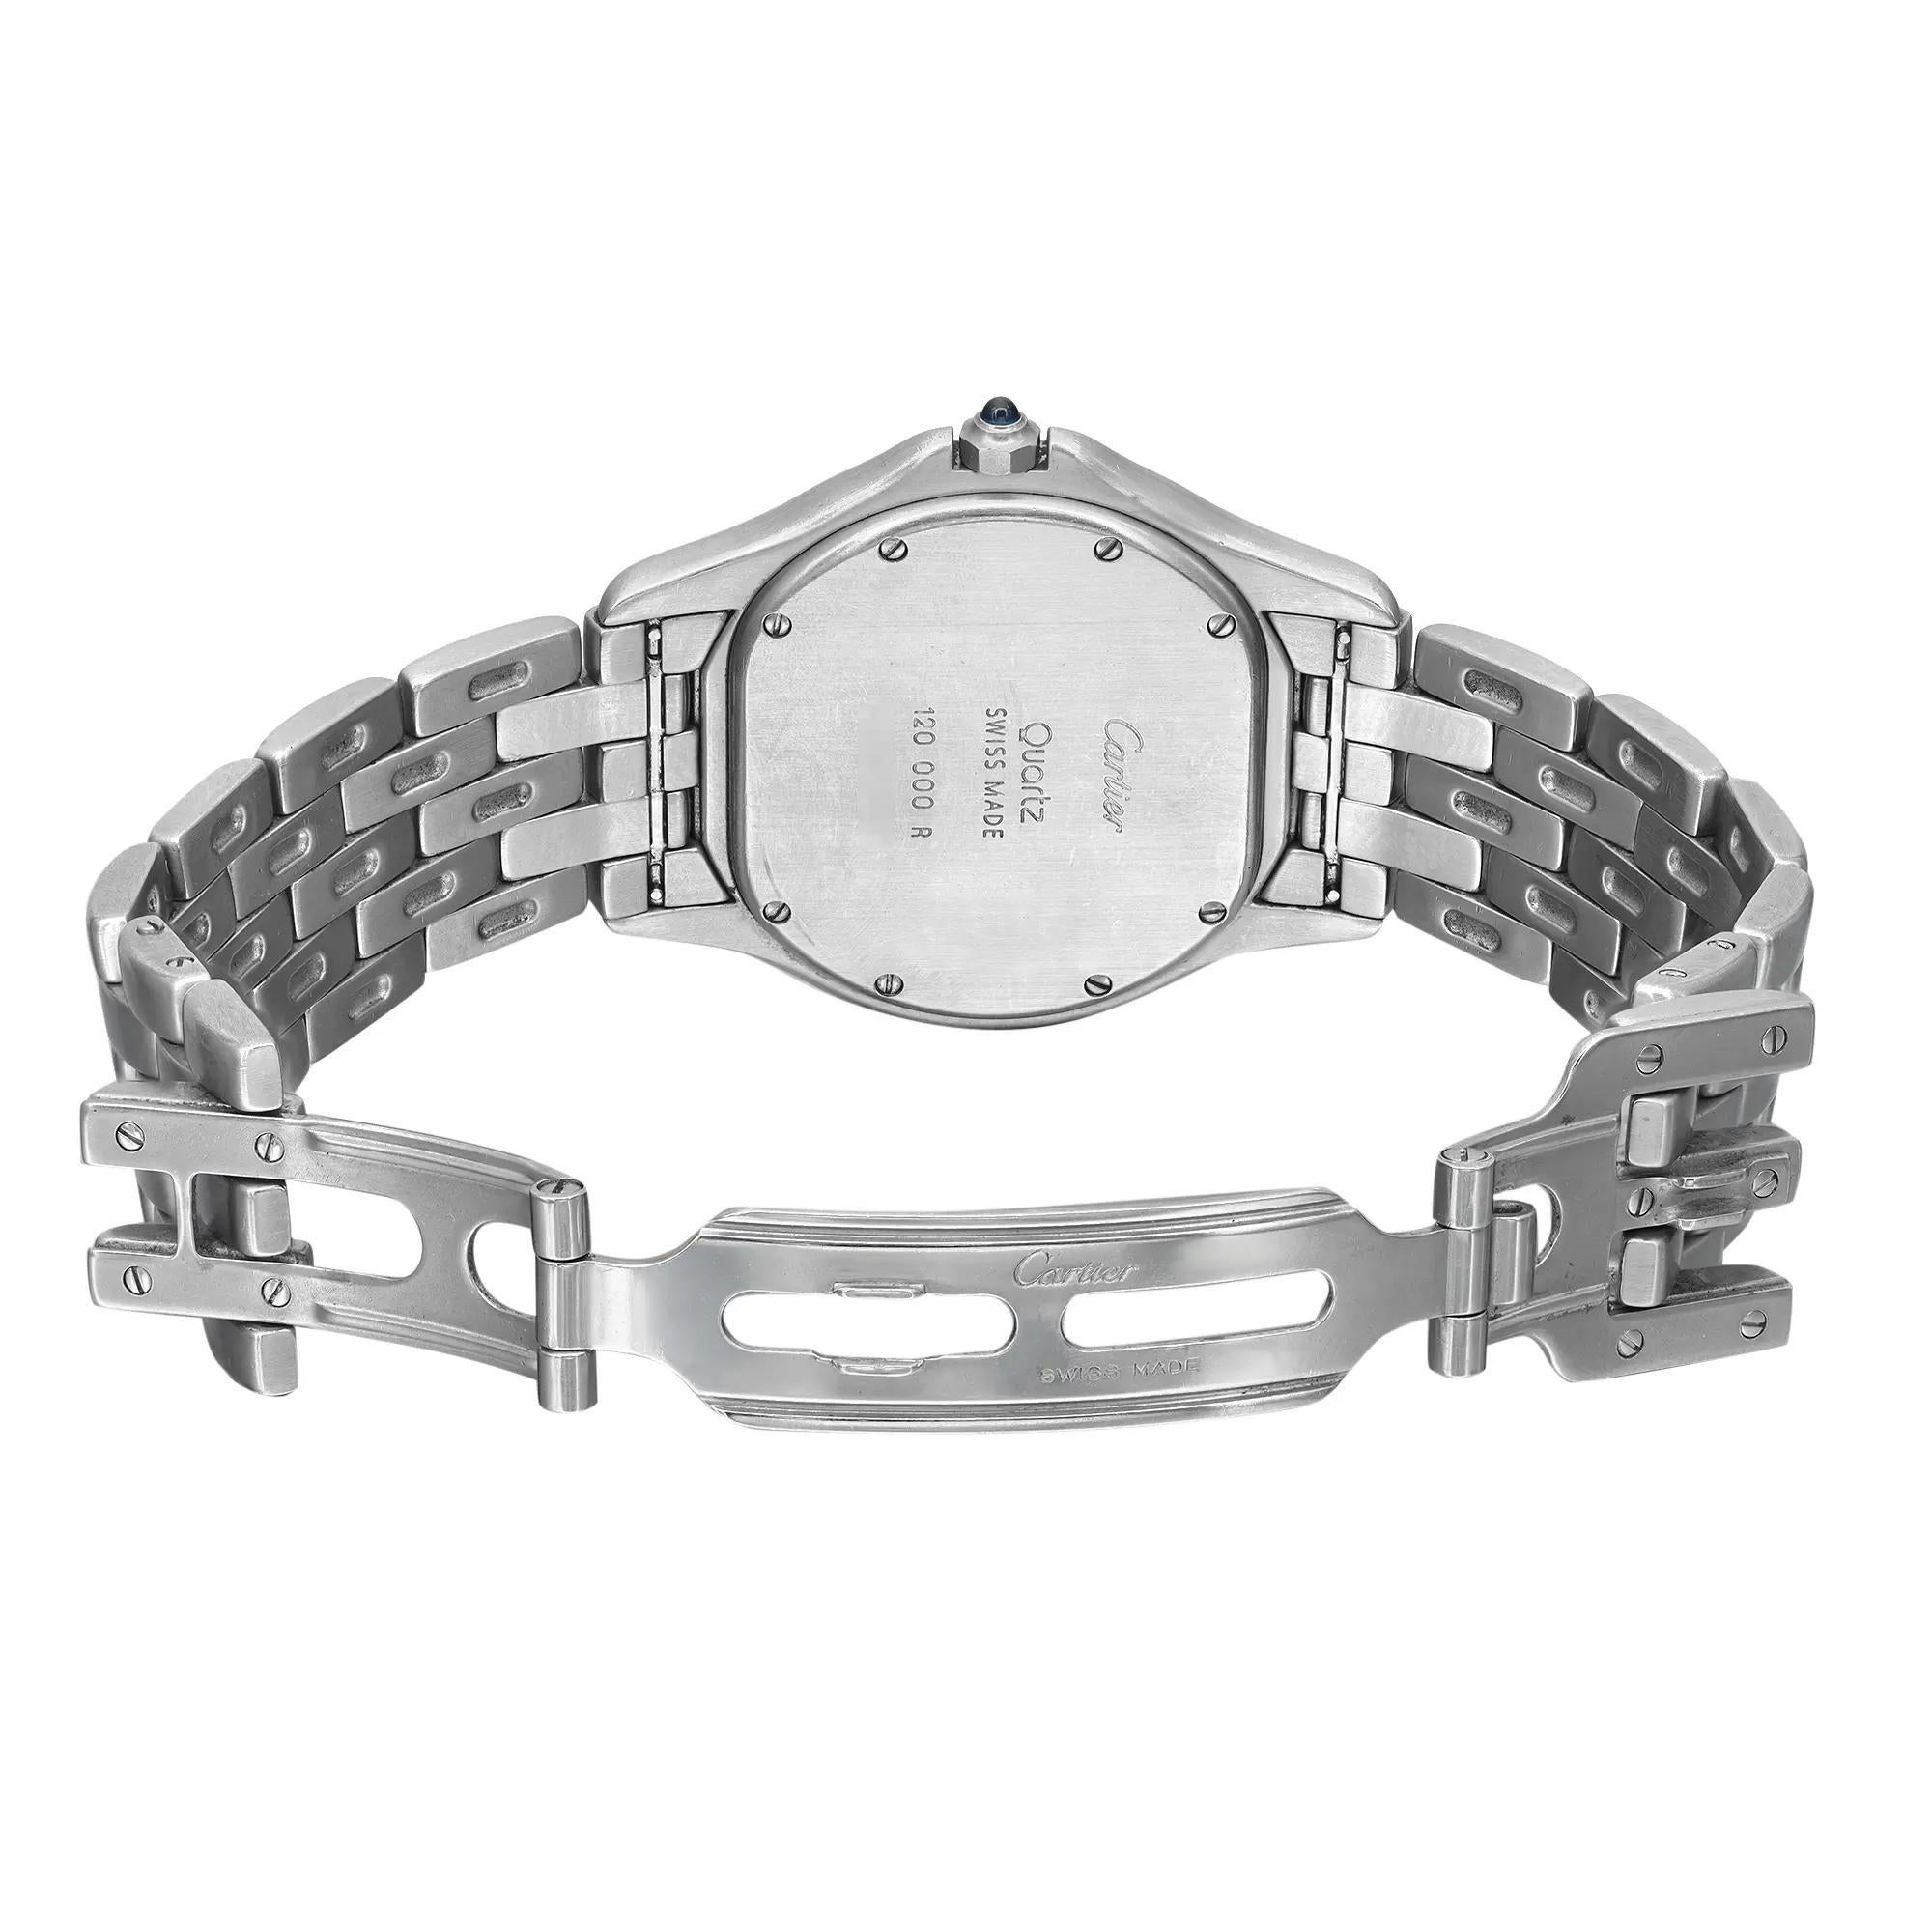 Cartier Cougar 33mm Stahl-Silber-Zifferblatt Quarz Unisex-Uhr W35002F5 2